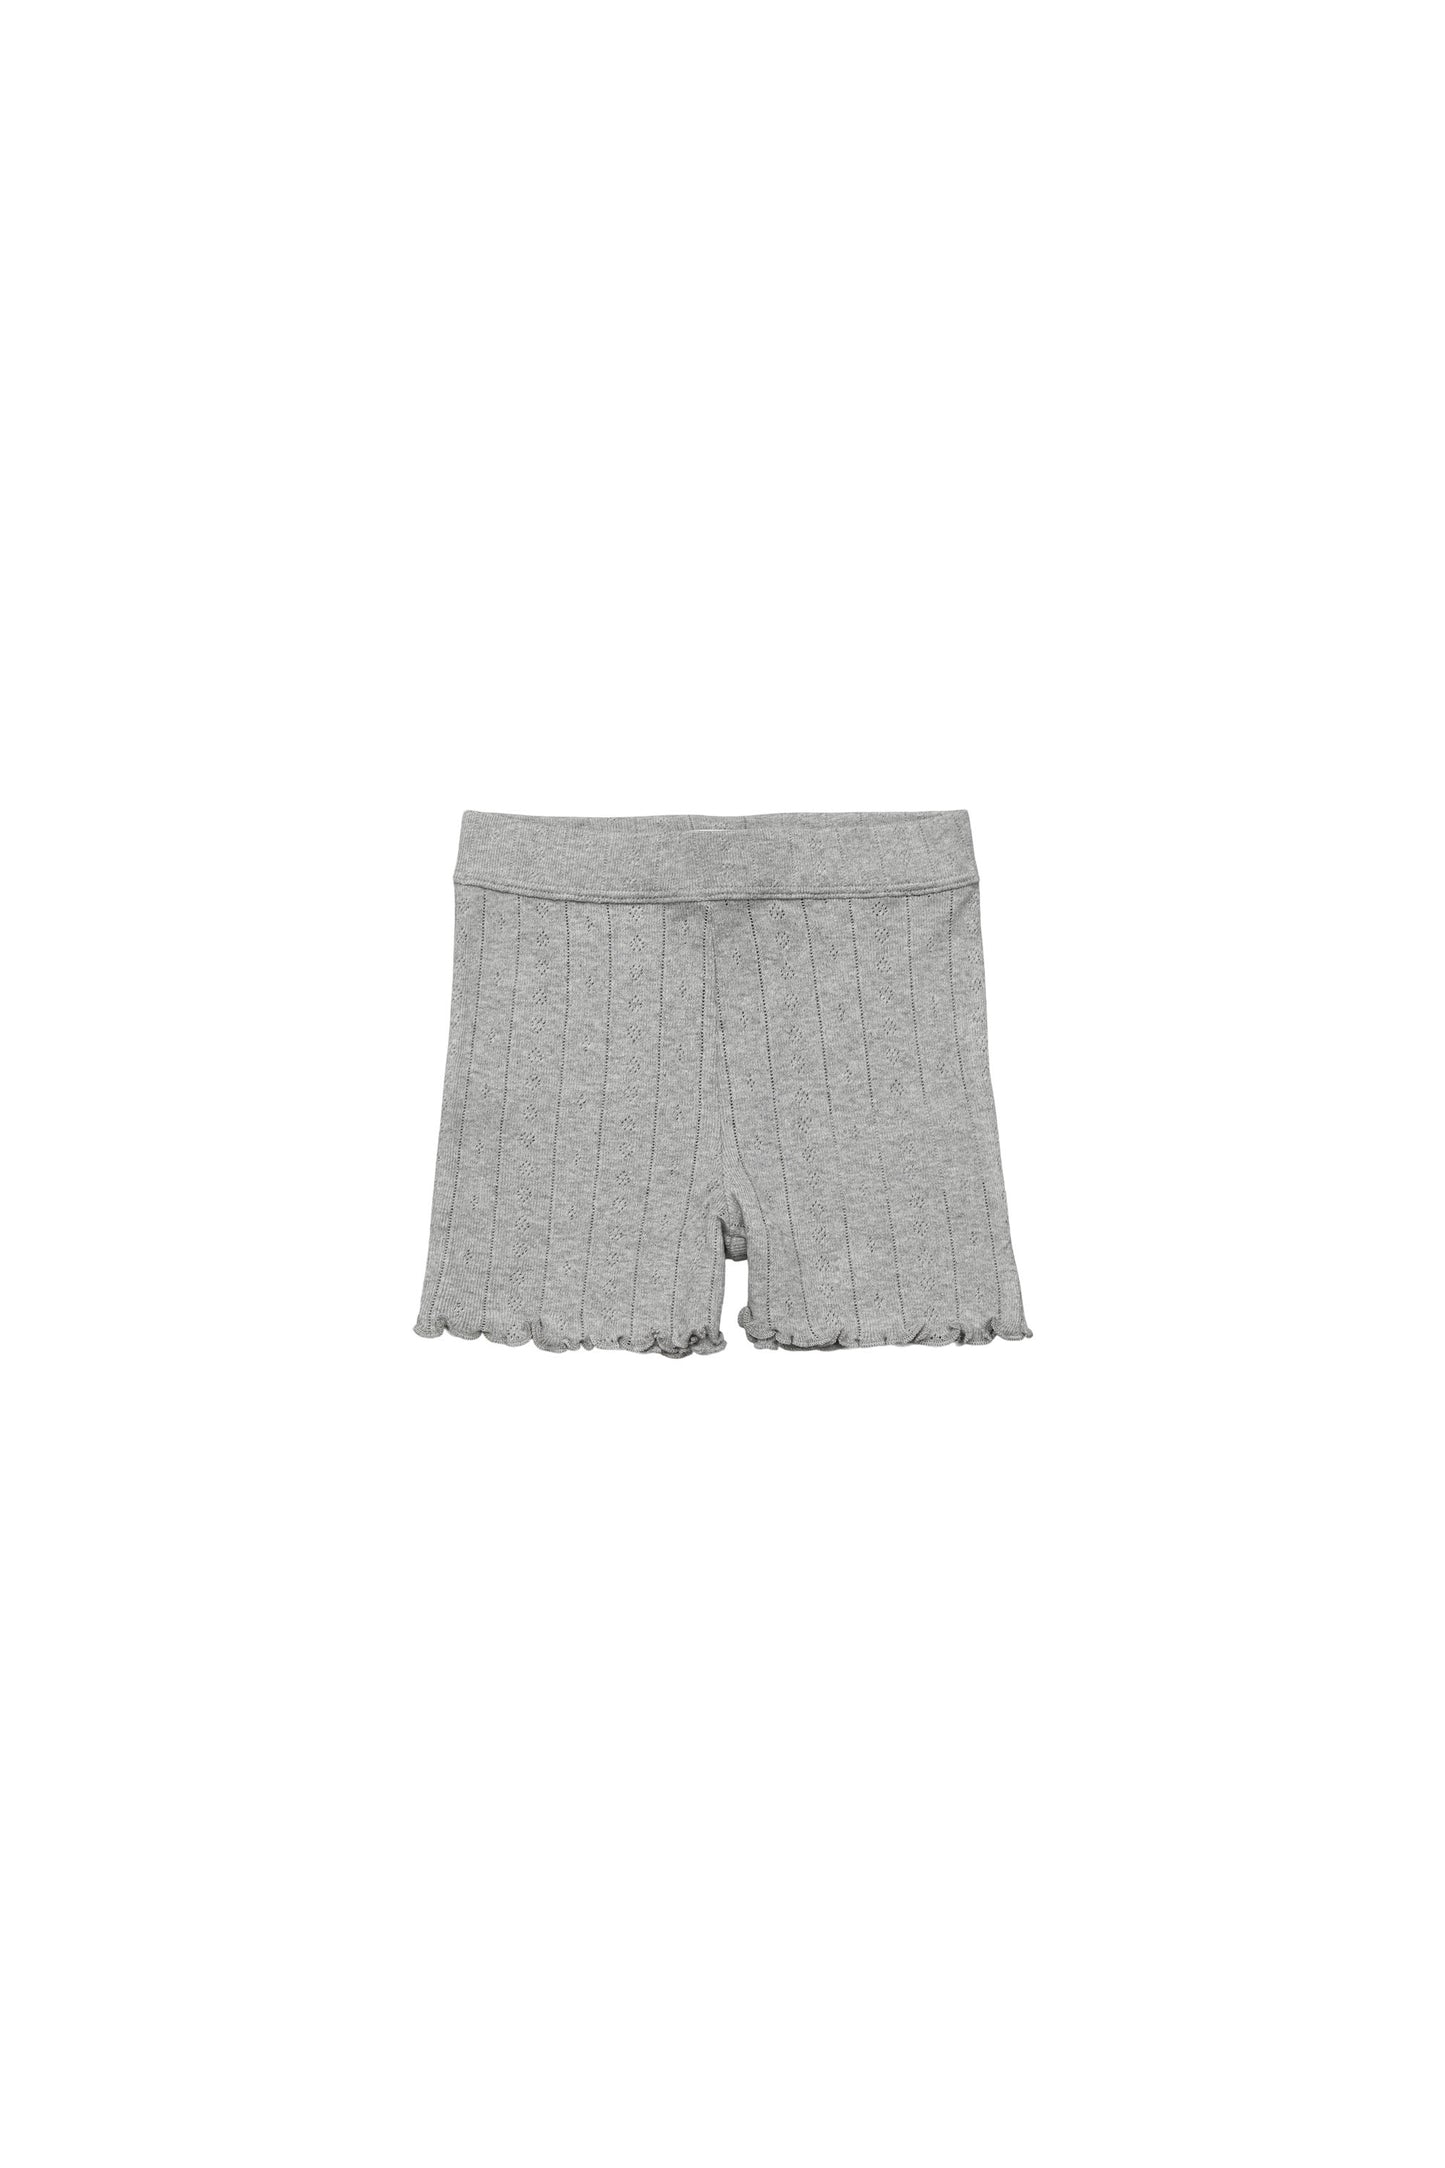 Skall Musling - Edie shorts Musling - Grey melange